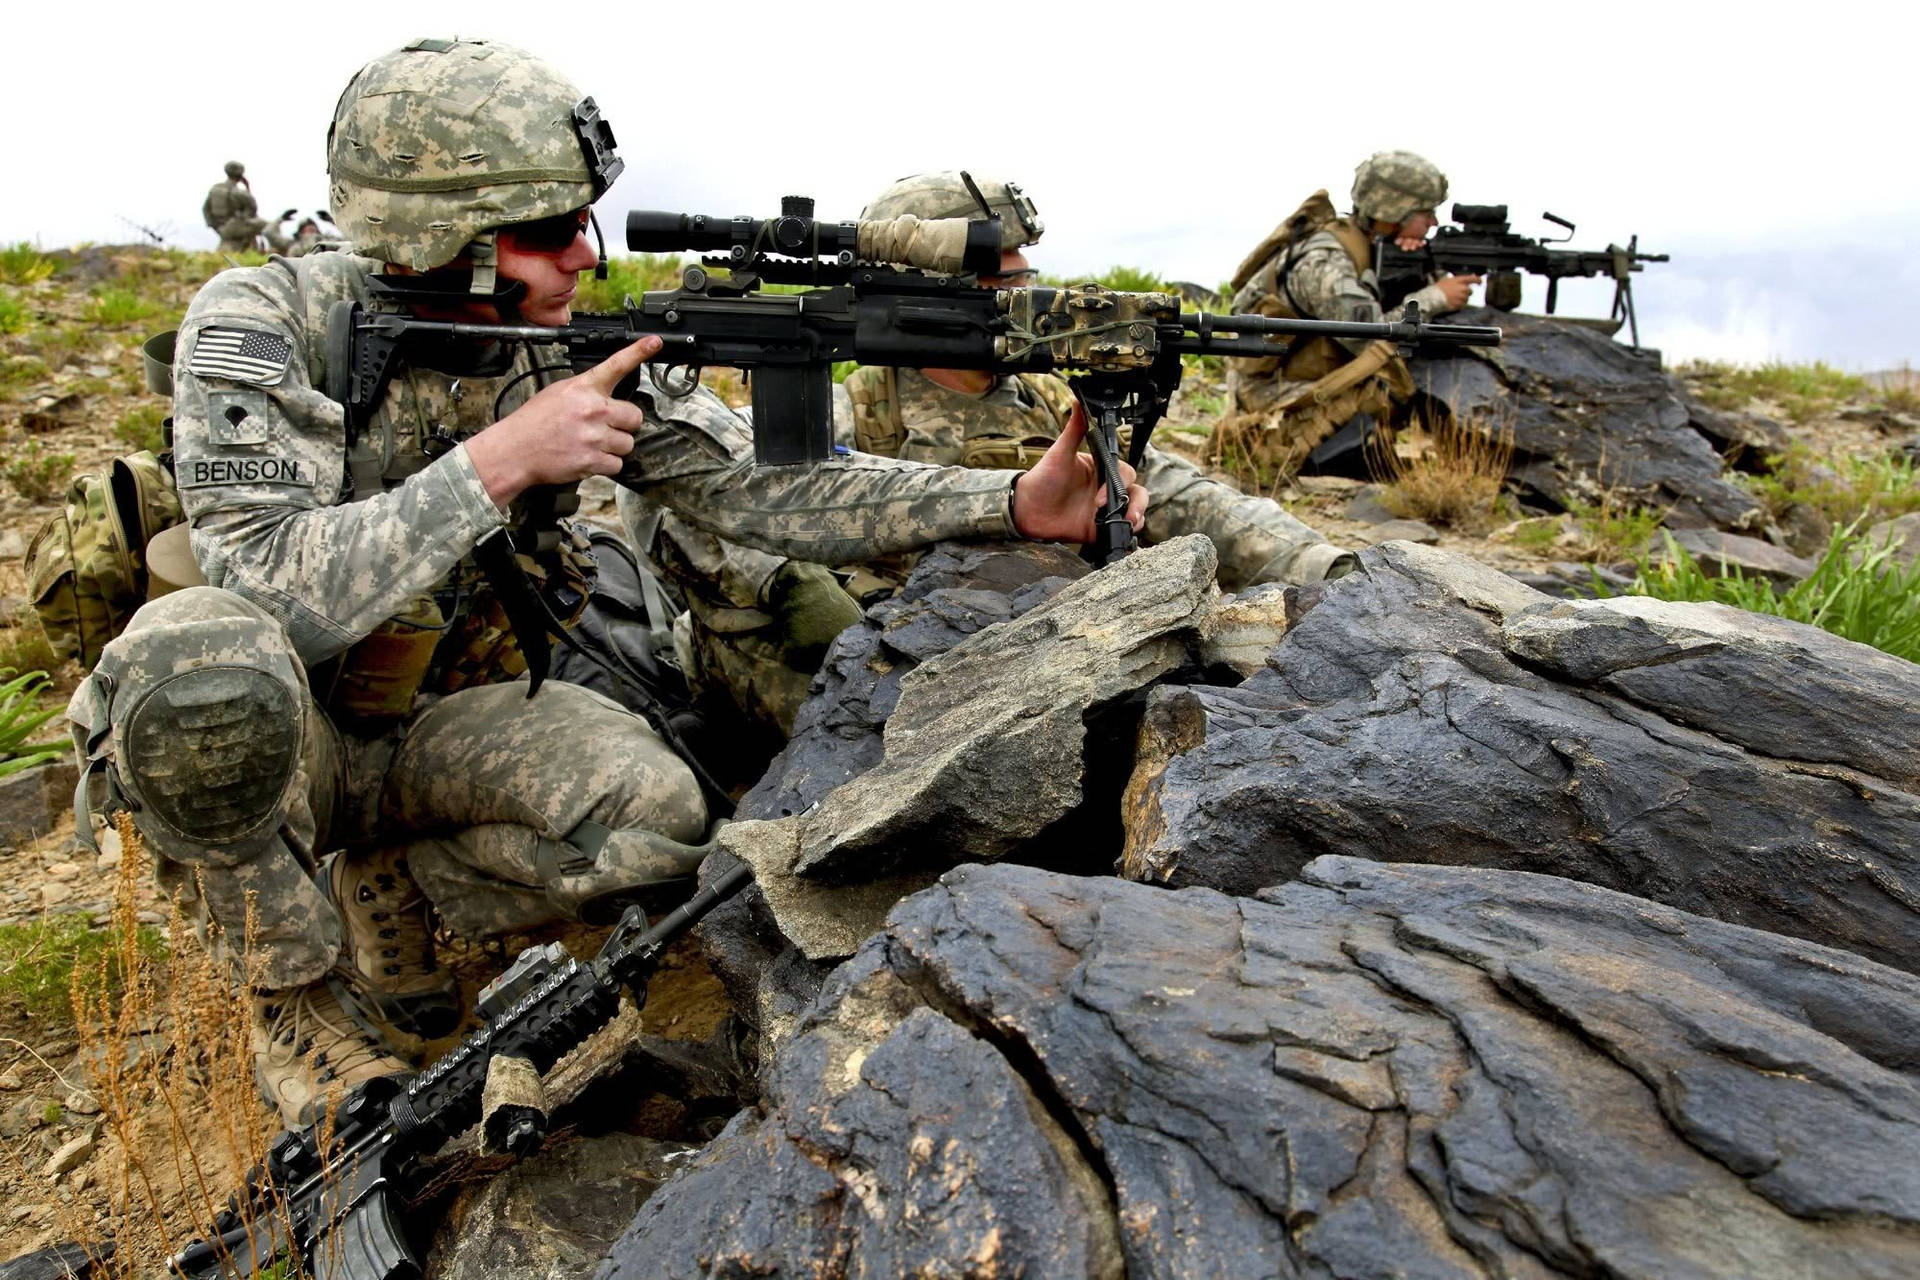 Para Commandos Perched On Rocks